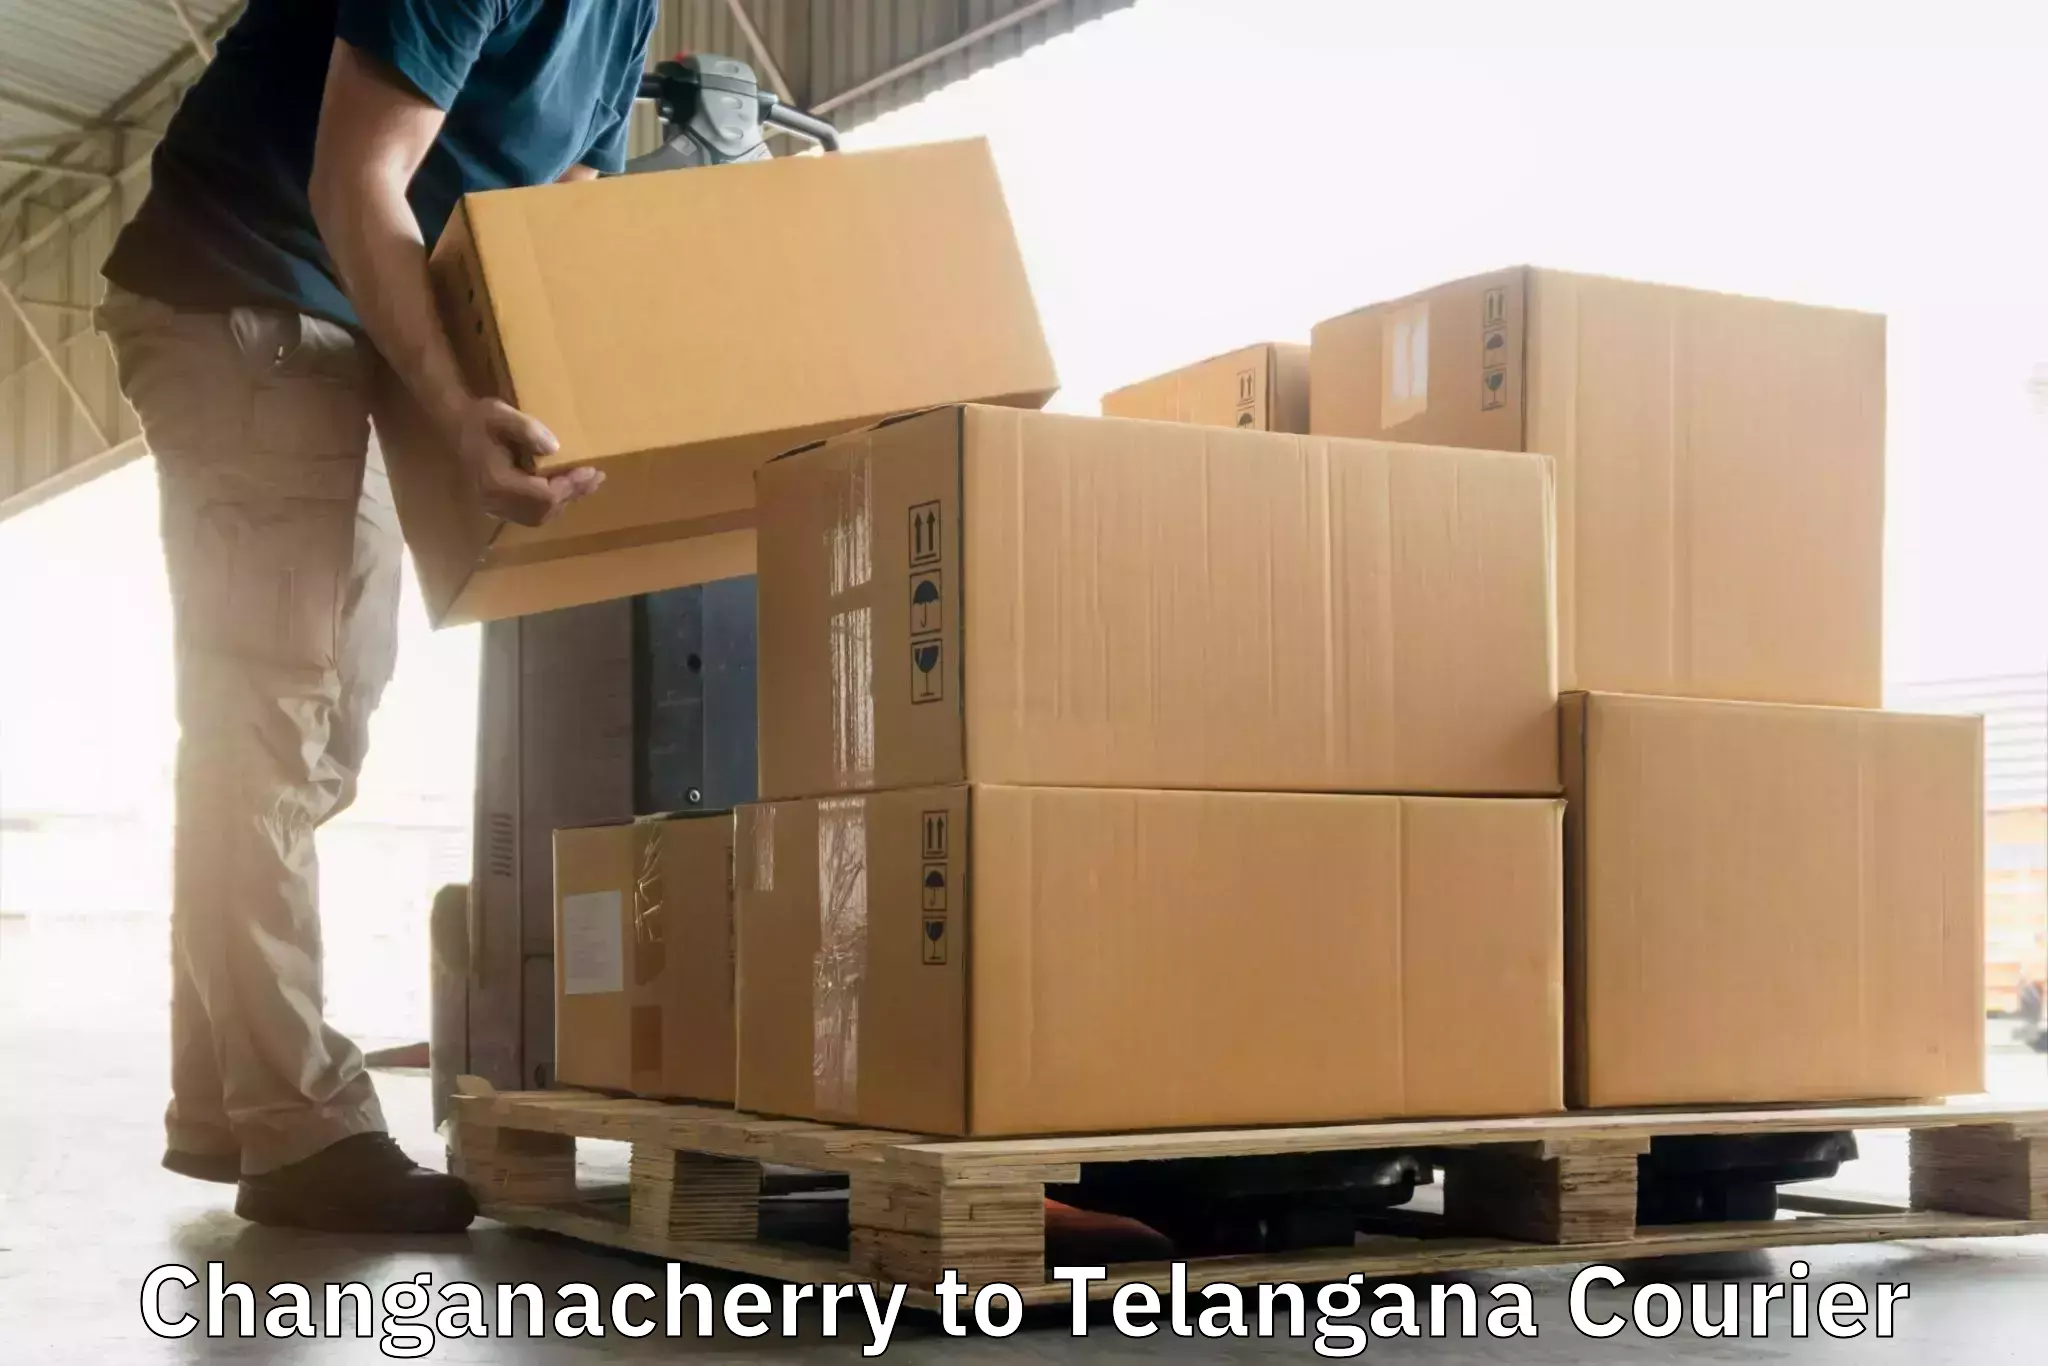 Modern courier technology Changanacherry to Narayankhed